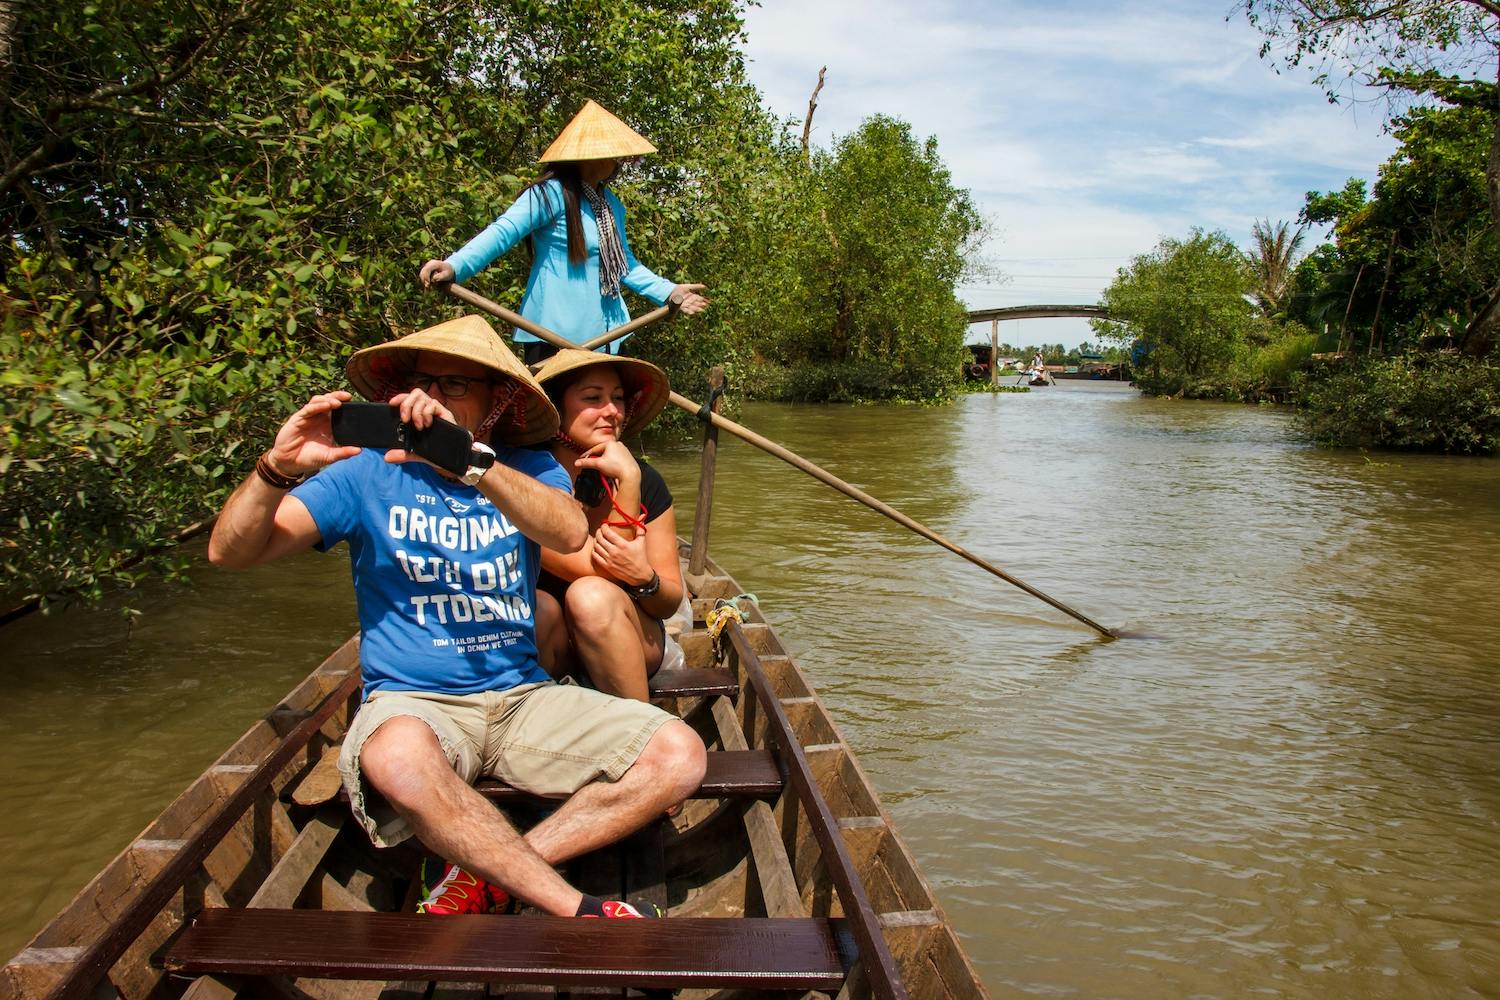 Tour zum Mekong-Delta und Ben Tre Coconut Village ab HCMC-Hafen